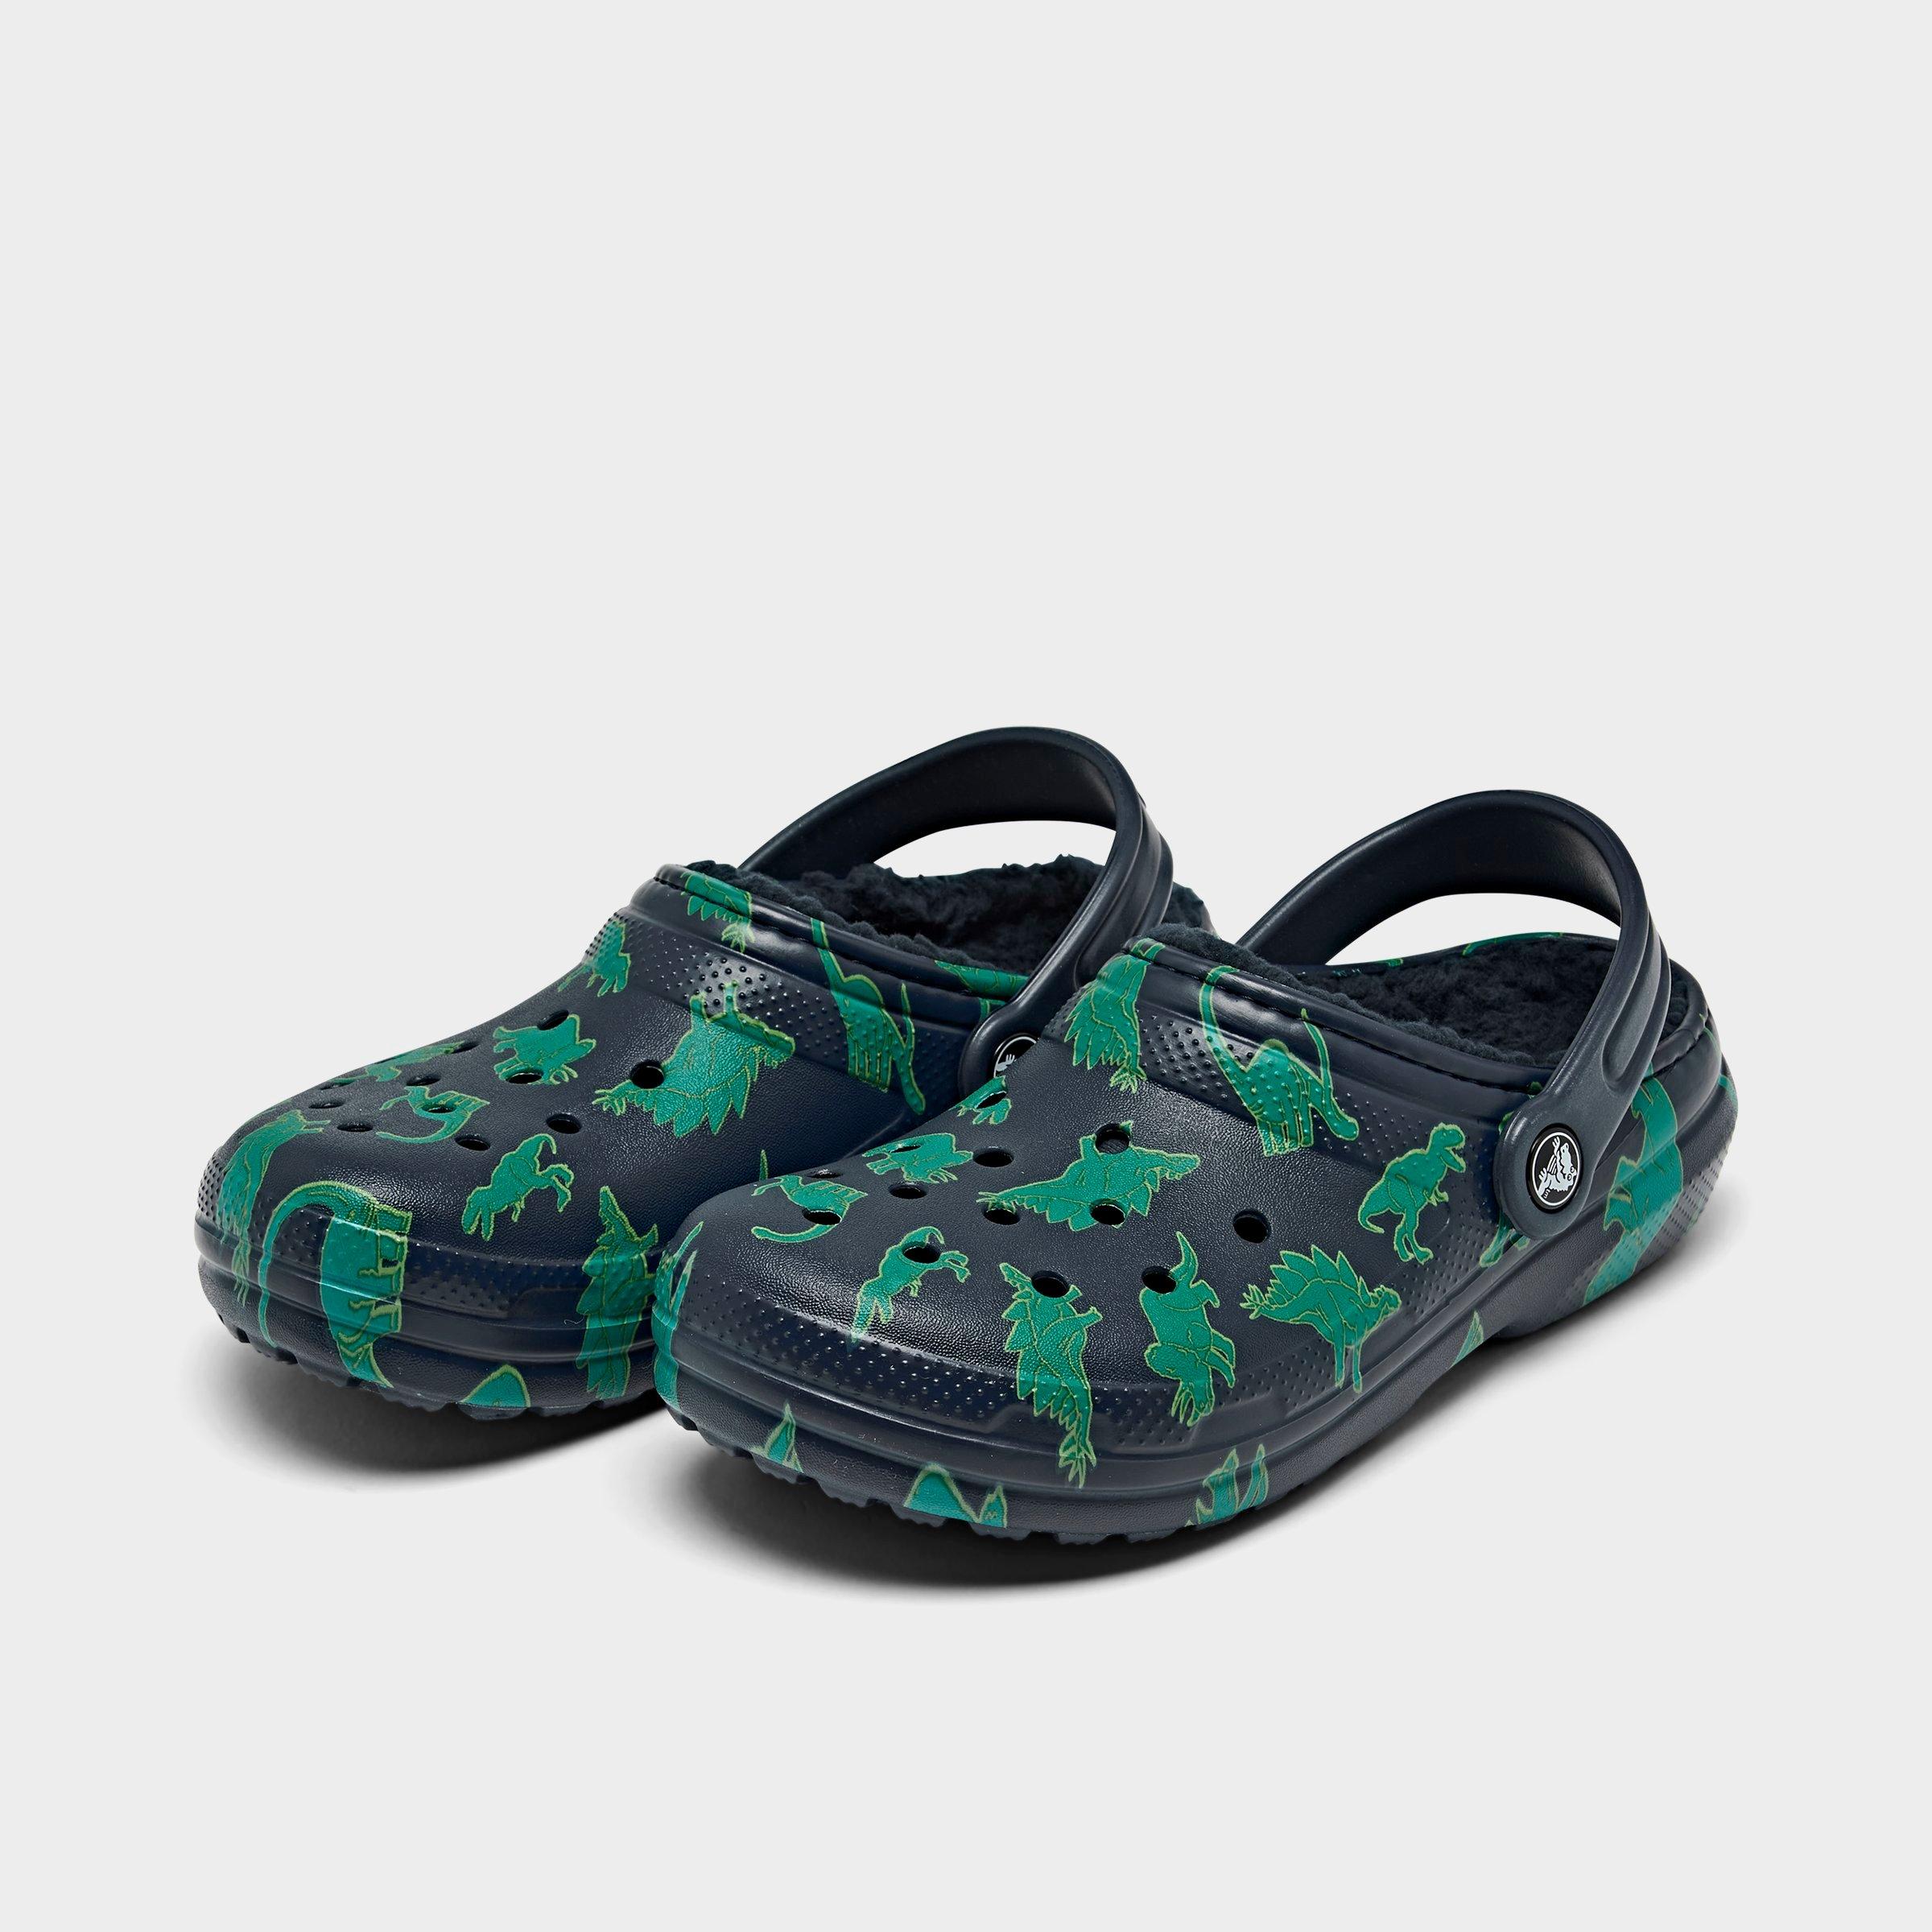 boys croc style shoes